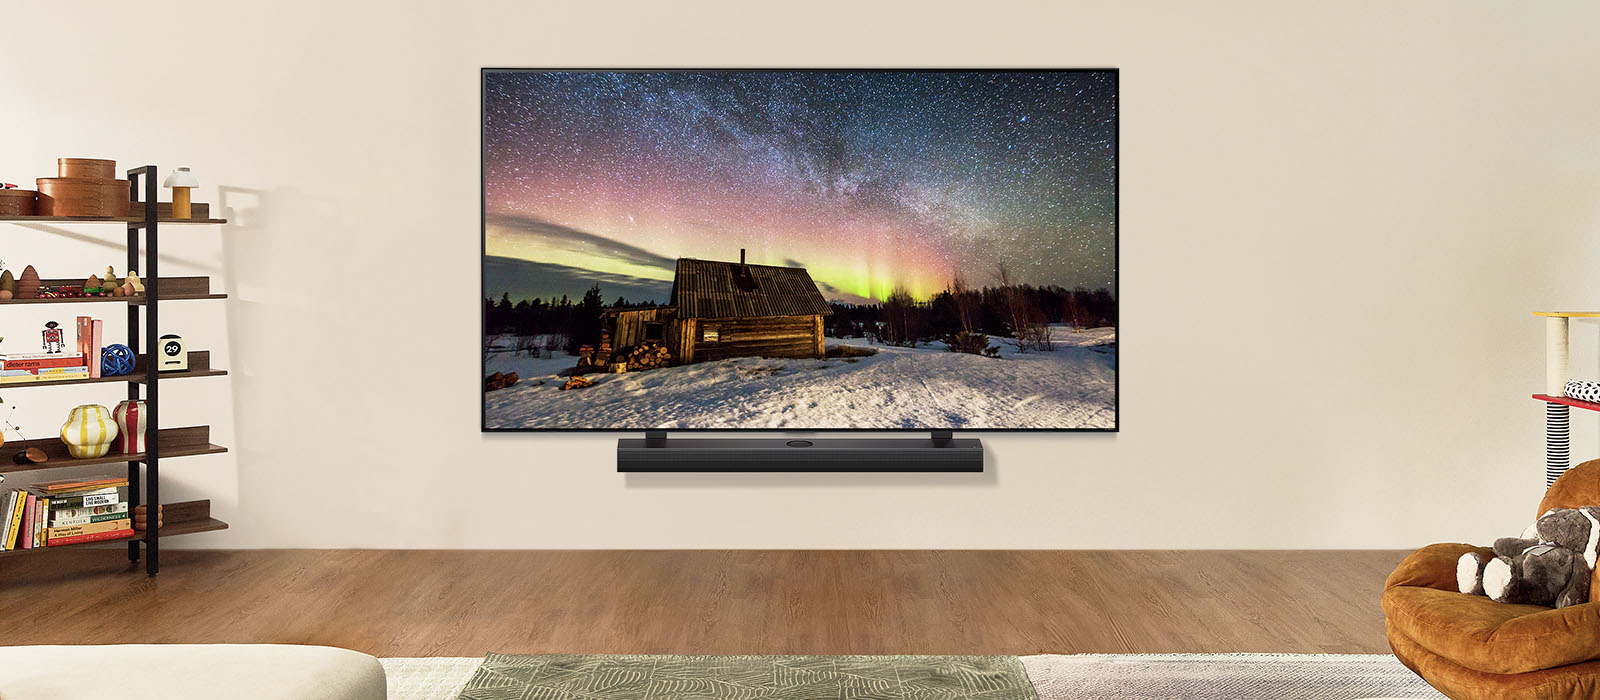 تلفزيون LG ومكبر صوت مسطح من LG في غرفة معيشة عصرية في أثناء النهار. تُعرَض صورة للشفق القطبي على الشاشة بمستويات سطوع مثالية.